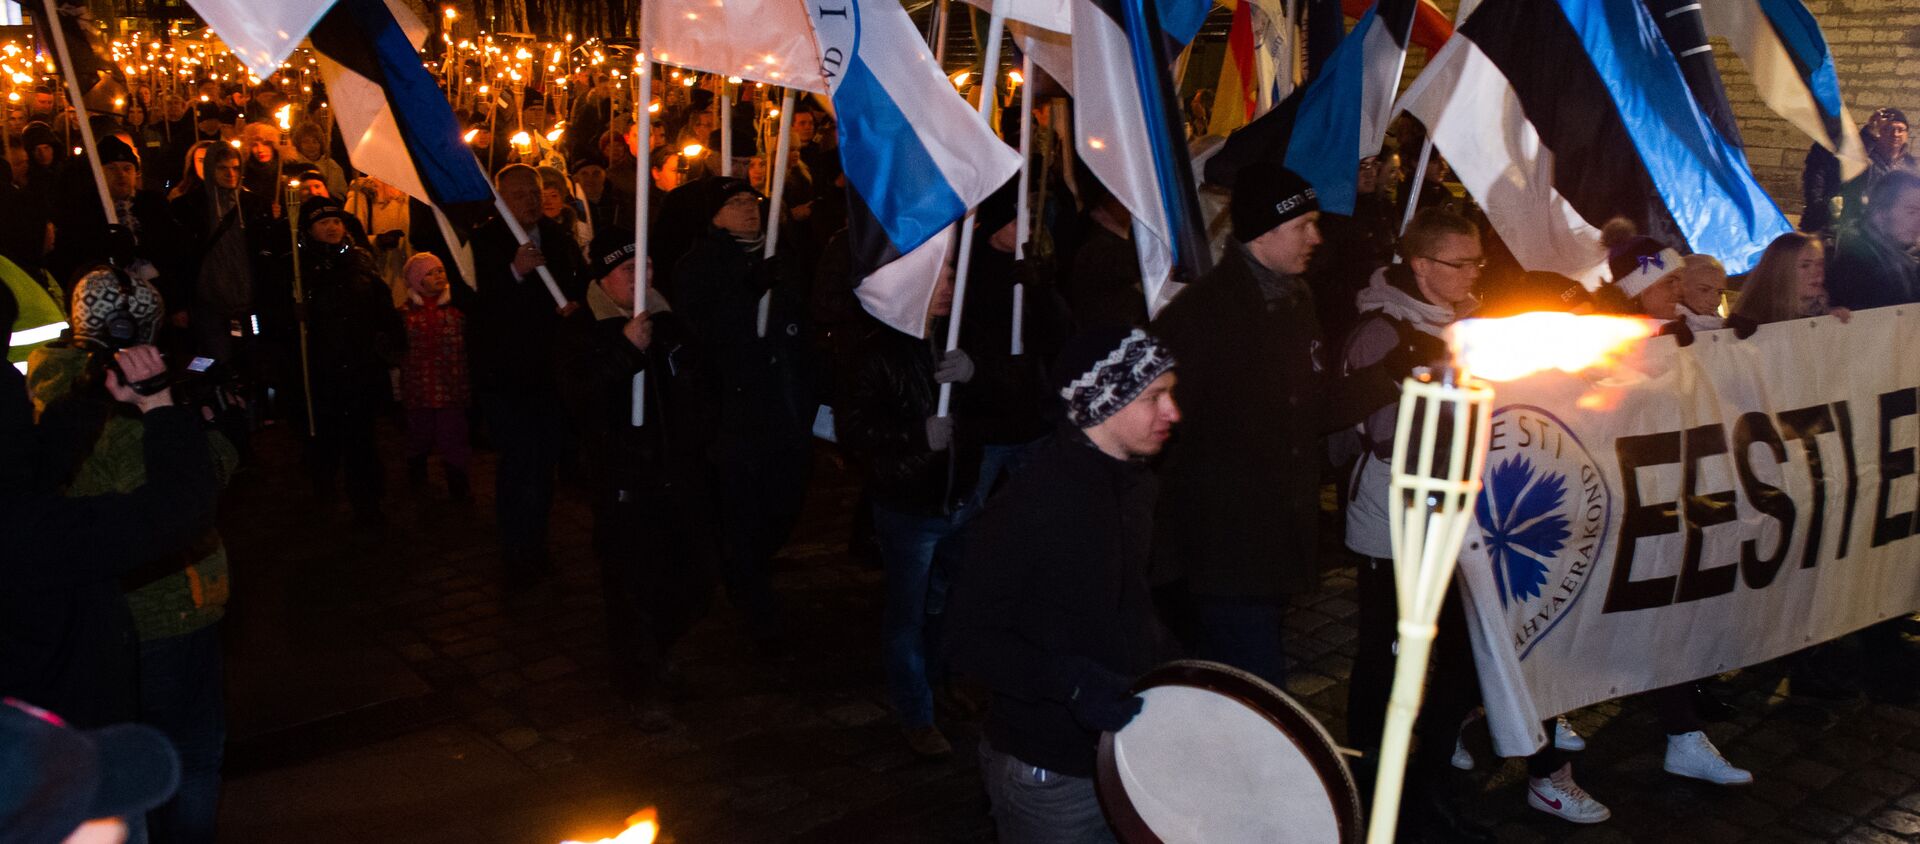 Факельное шествие в Таллинне. - Sputnik Latvija, 1920, 13.11.2020